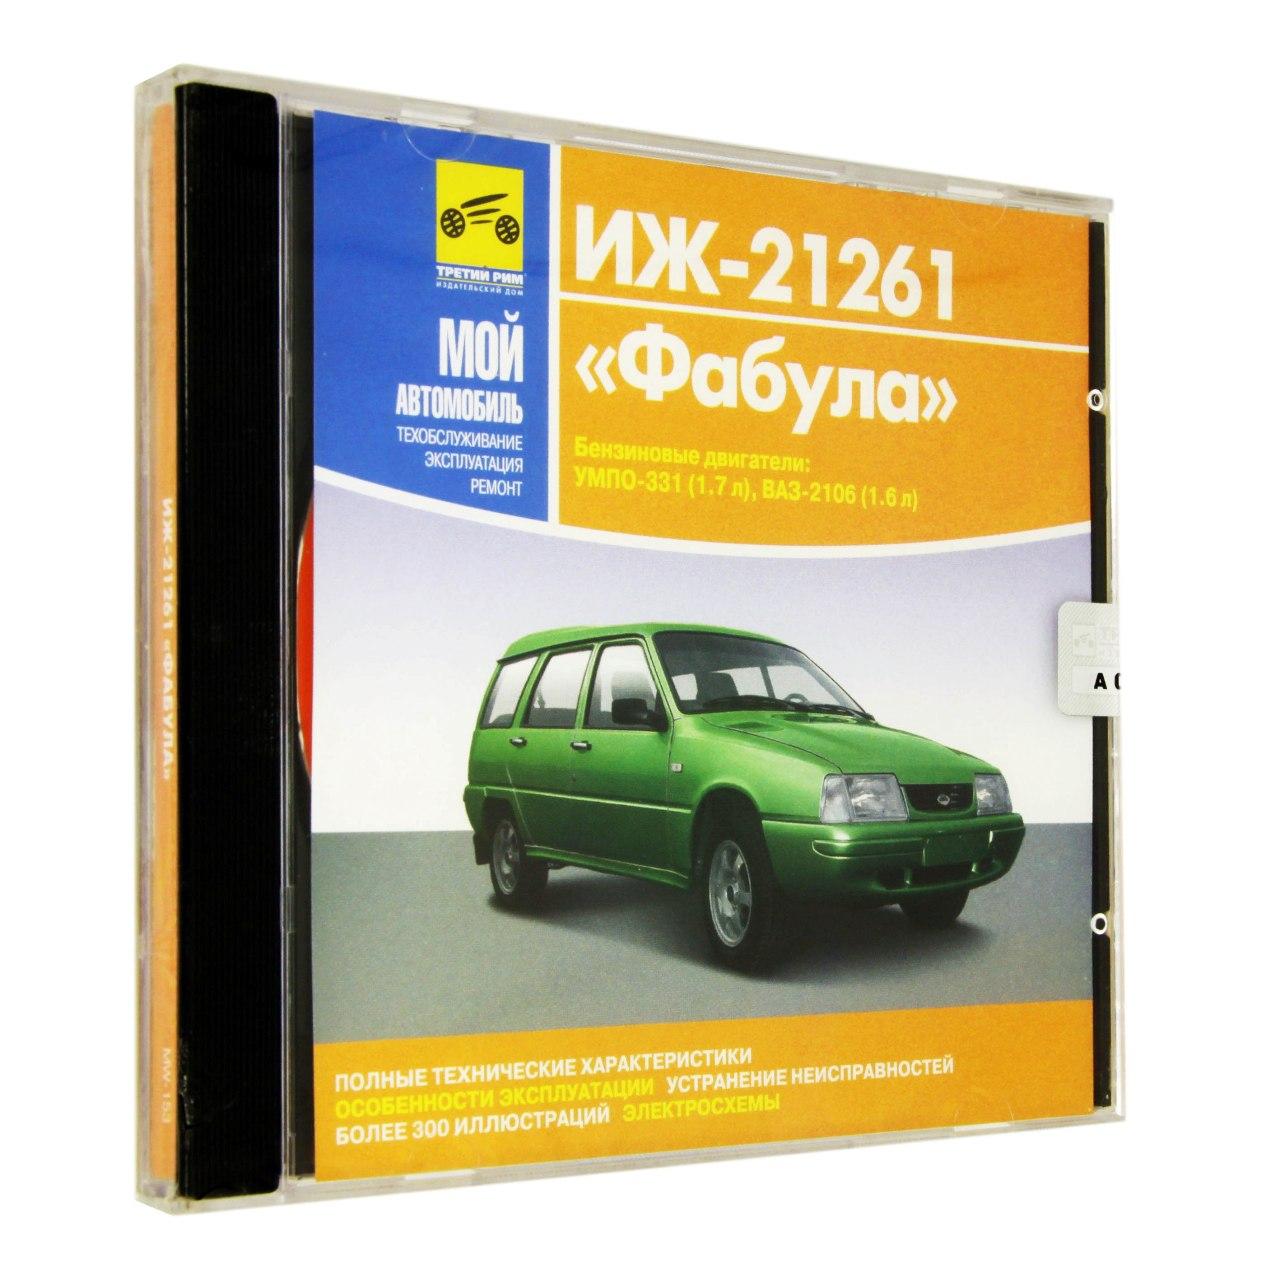 Компьютерный компакт-диск ИЖ 21261 Фабула. ’Мой автомобиль’. (ПК), фирма "Медиа Ворлд", 1CD